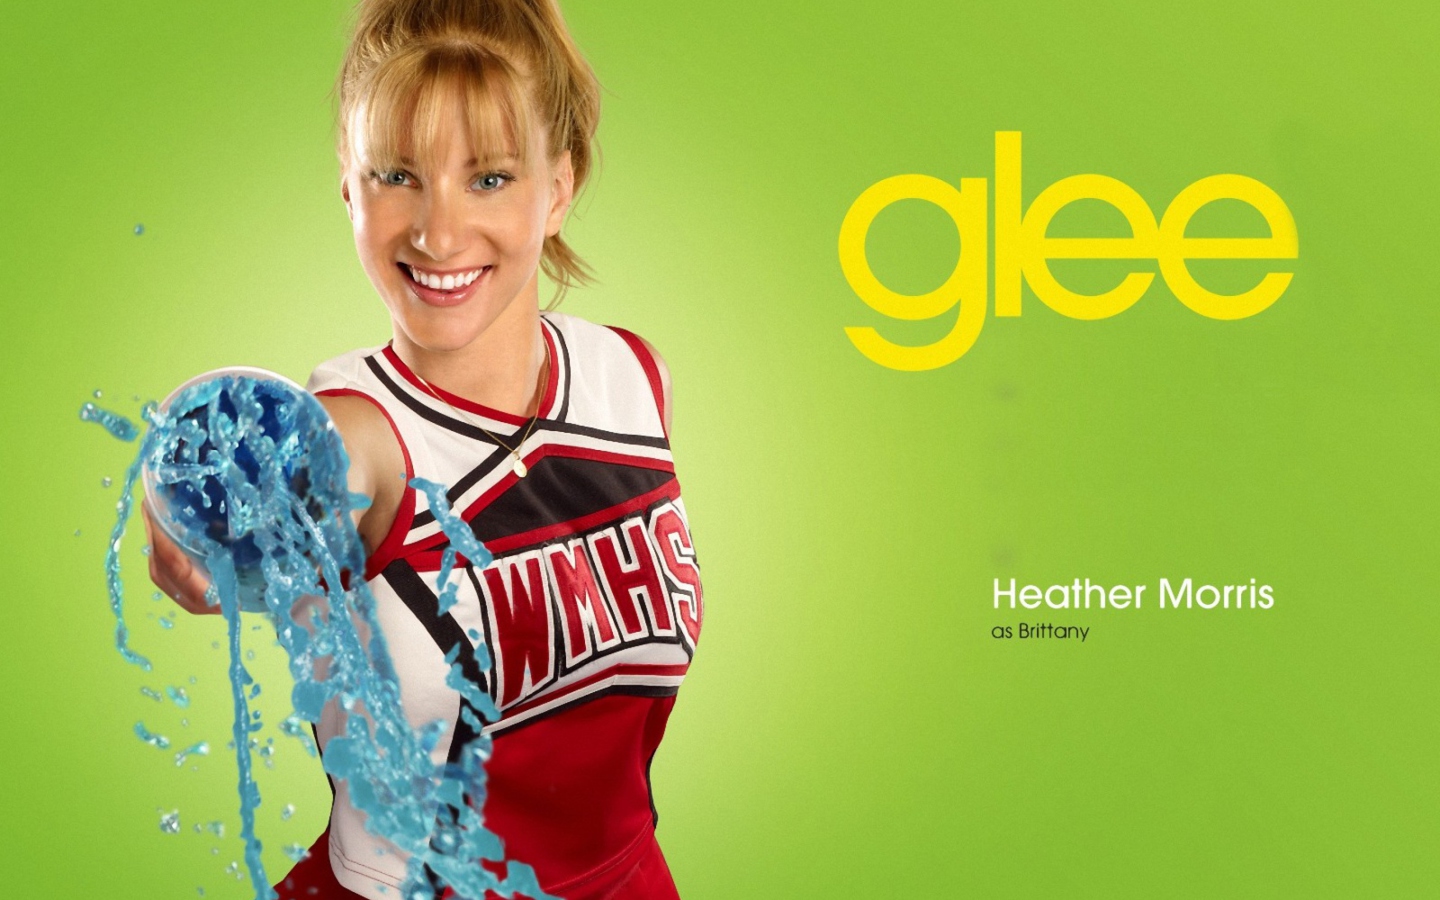 Heather Morris Glee Brittany screenshot #1 1440x900